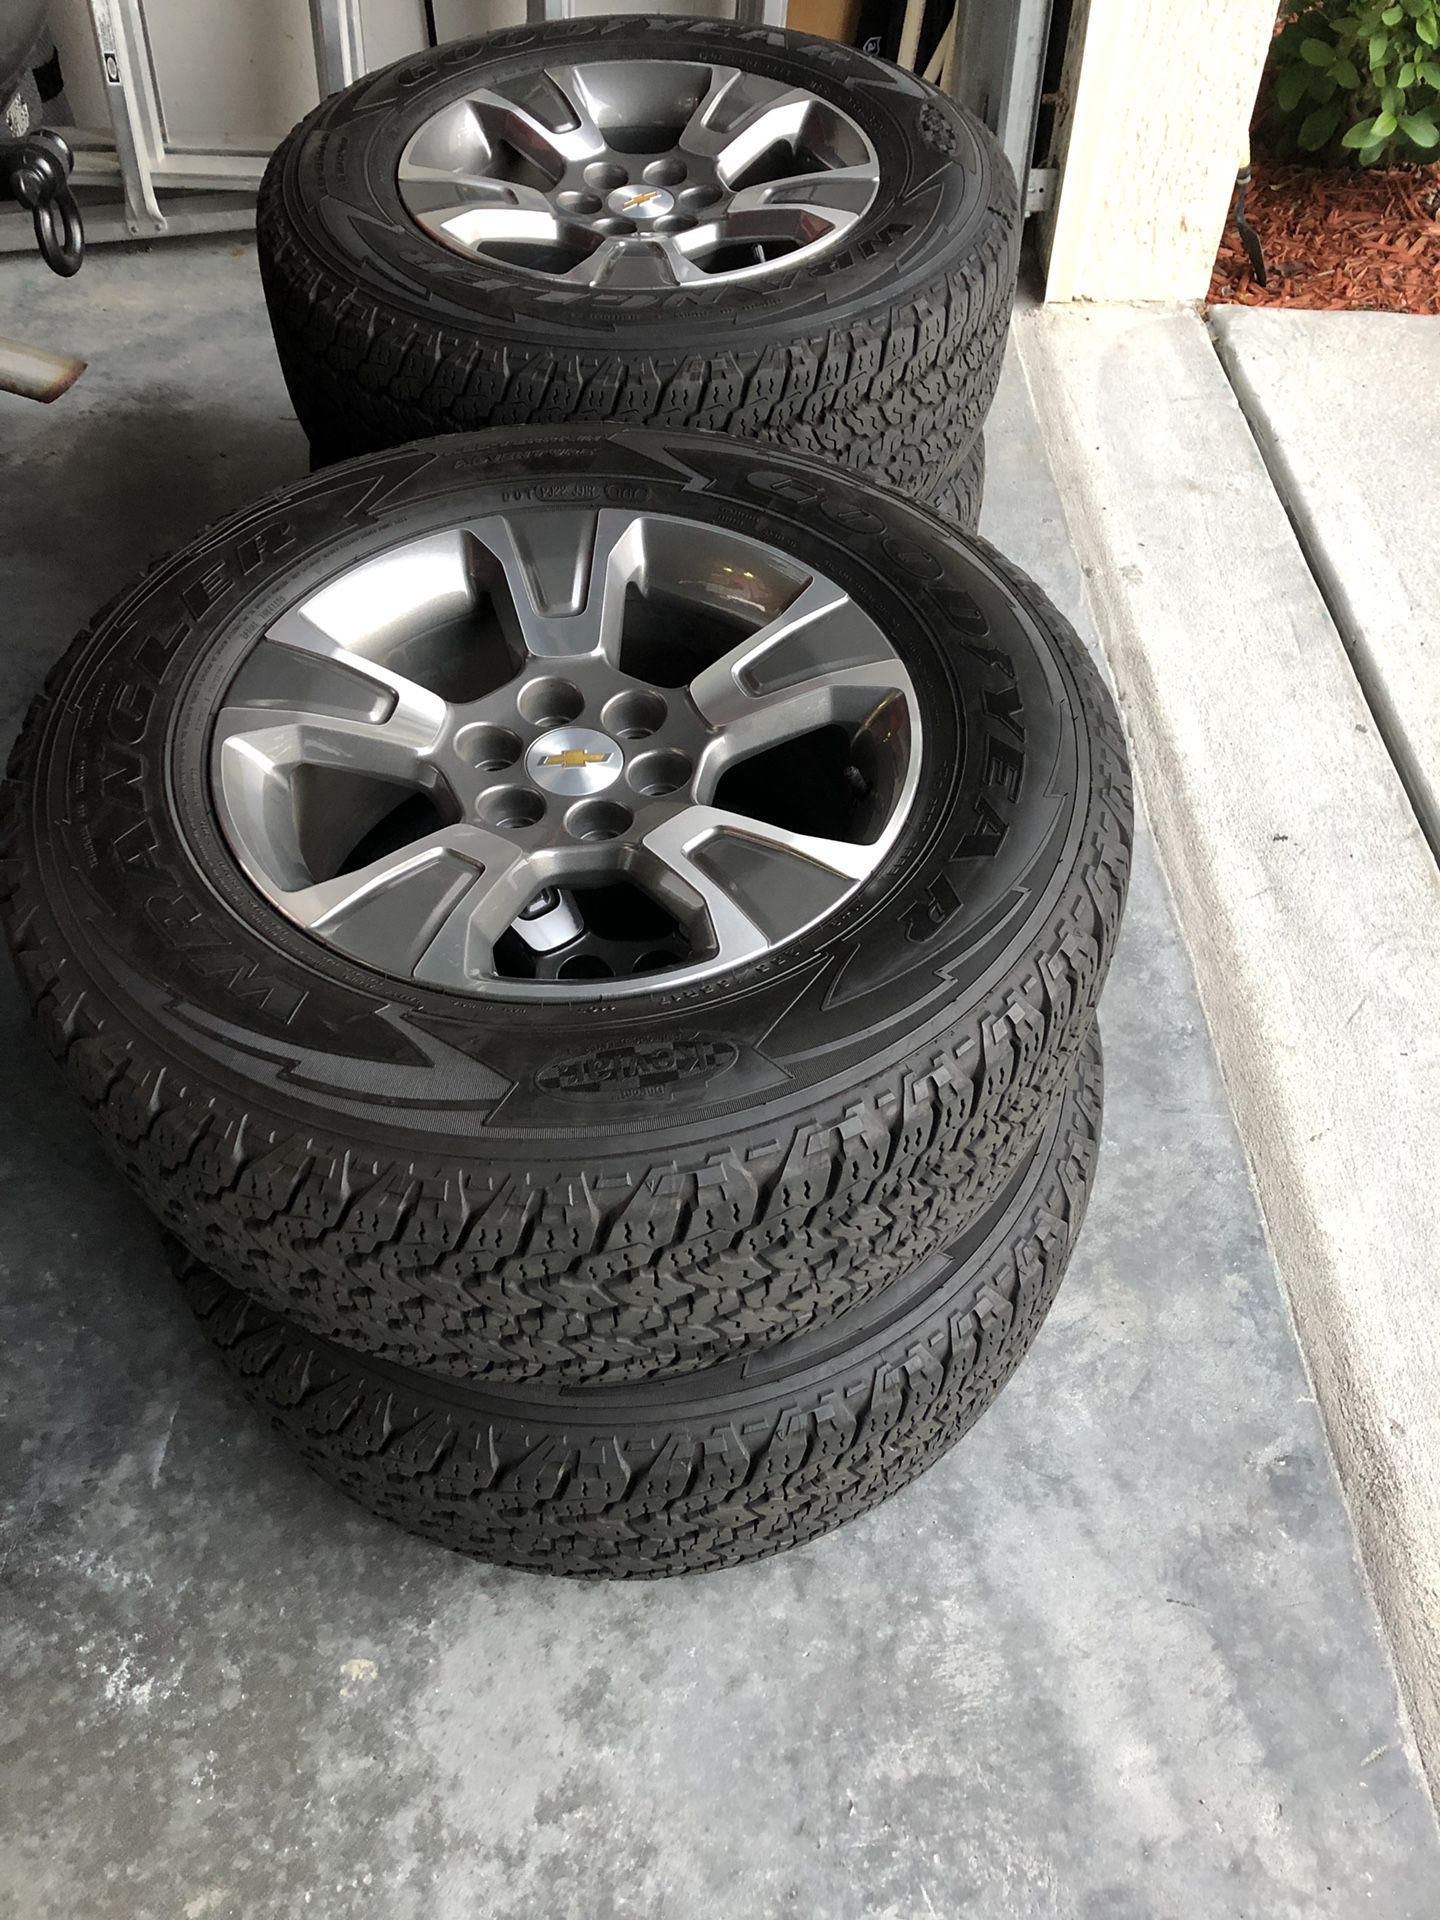 Chevy Colorado wheels 255/65/17